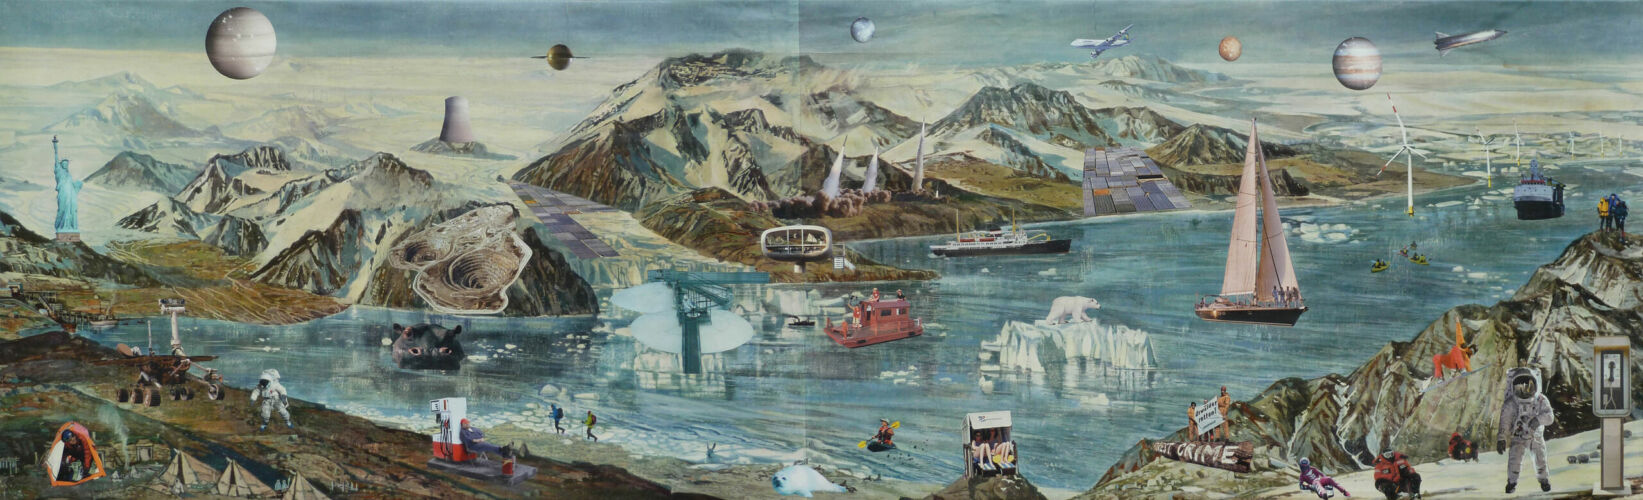 Nah und Fern, 2011, Collage, Papier auf Gewebe, 60 x 200 cm